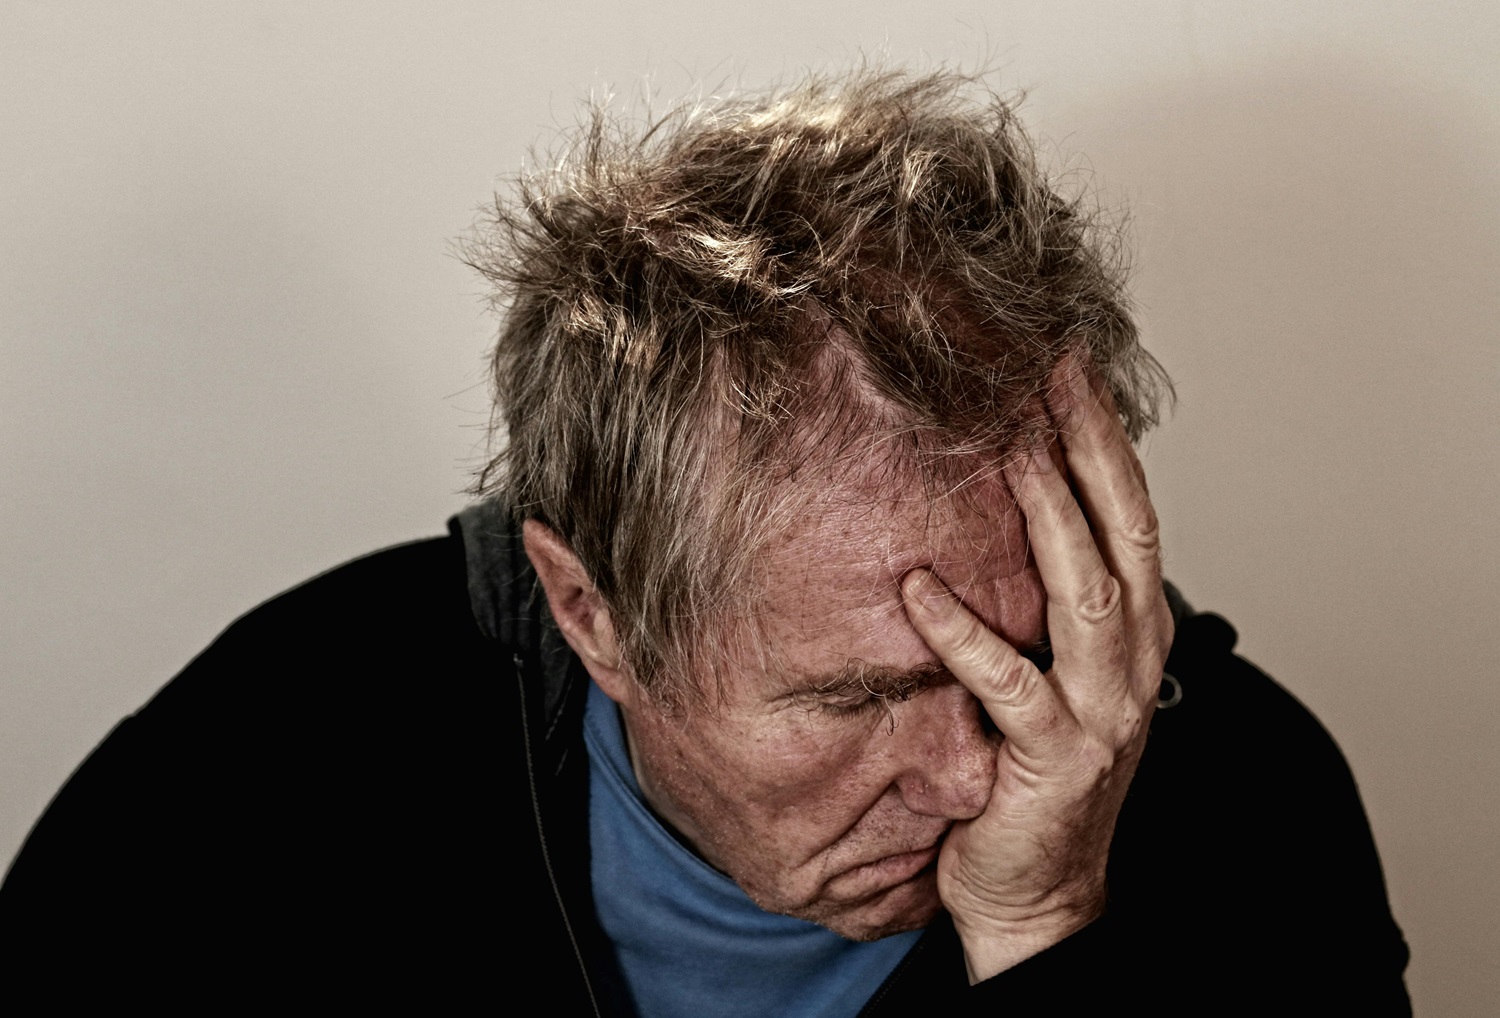 Gydytoja psichiatrė papasakojo, kodėl vyresniame amžiuje vienatvė išgyvenama itin skaudžiai